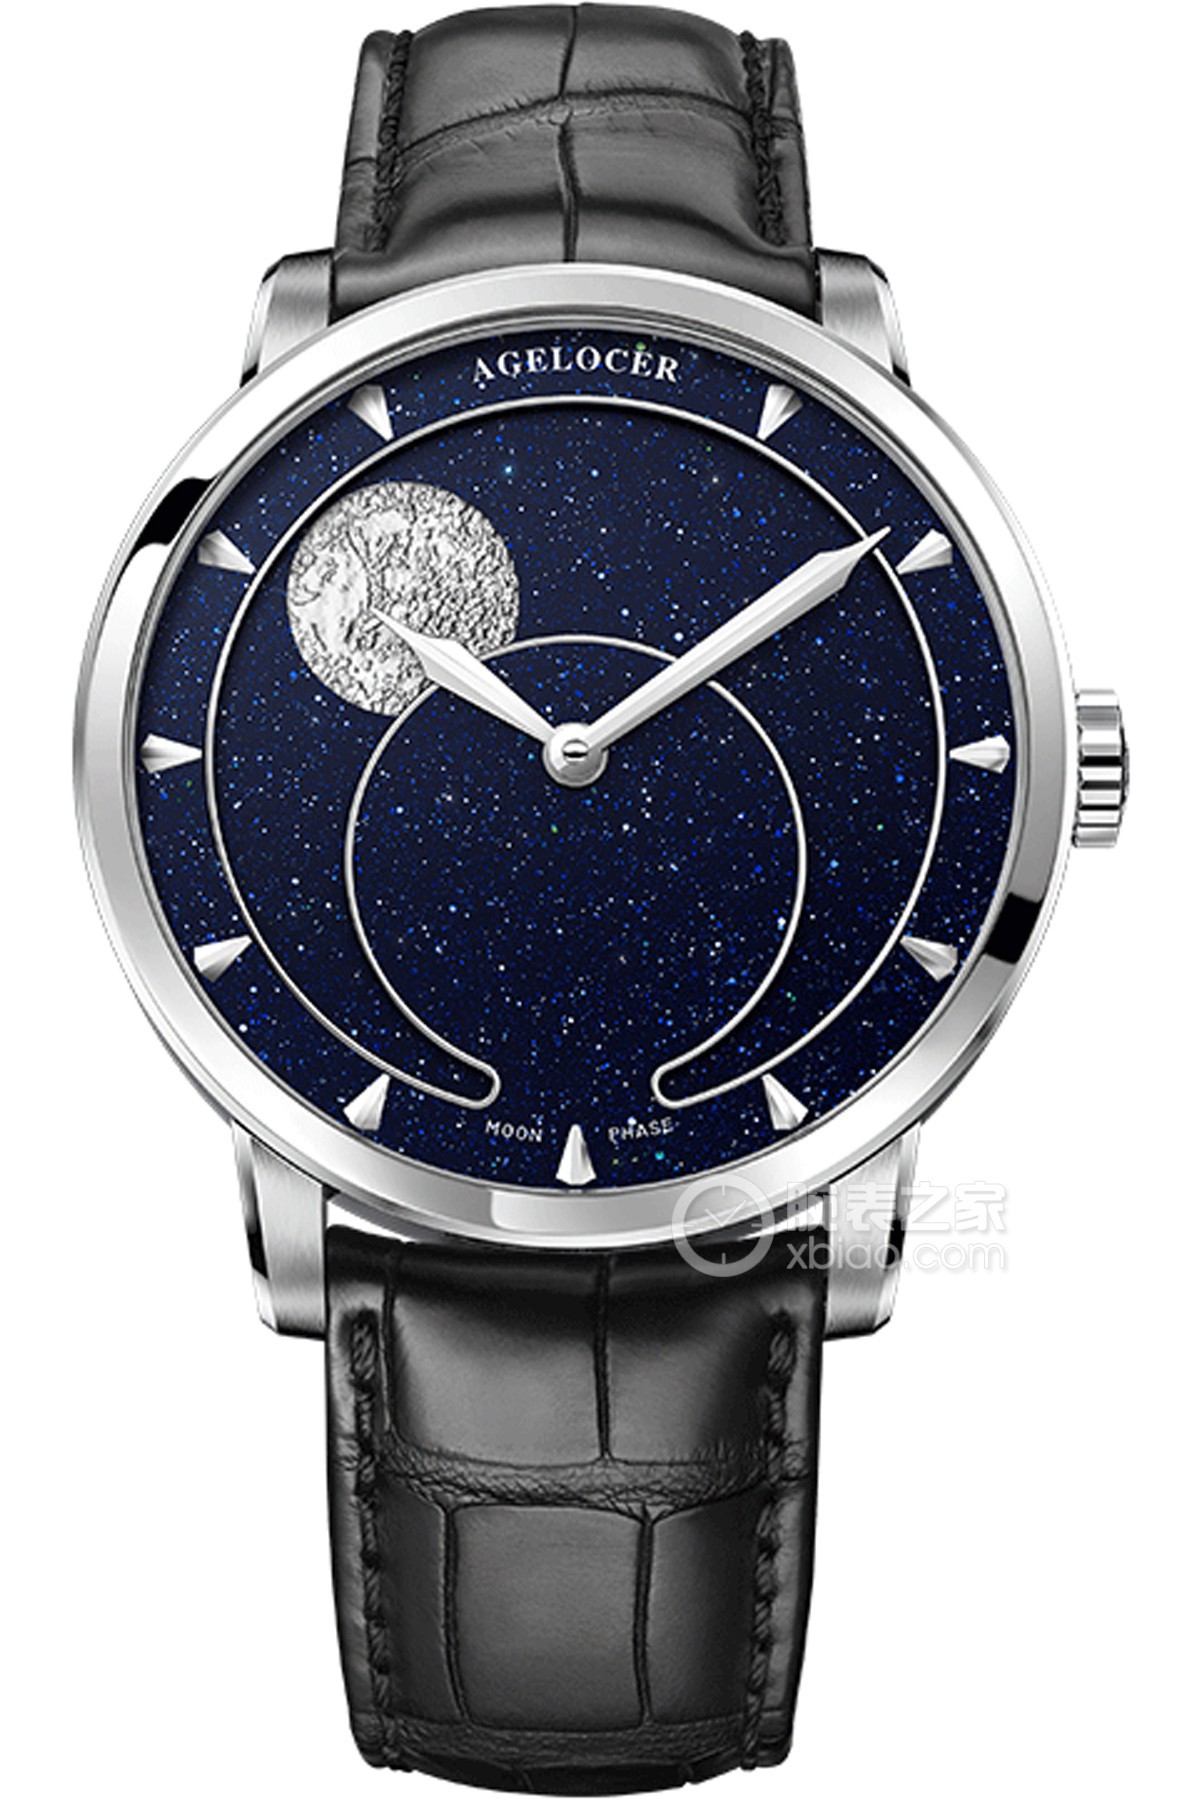 爱勒天文学家系列6406A1-蓝砂石银月